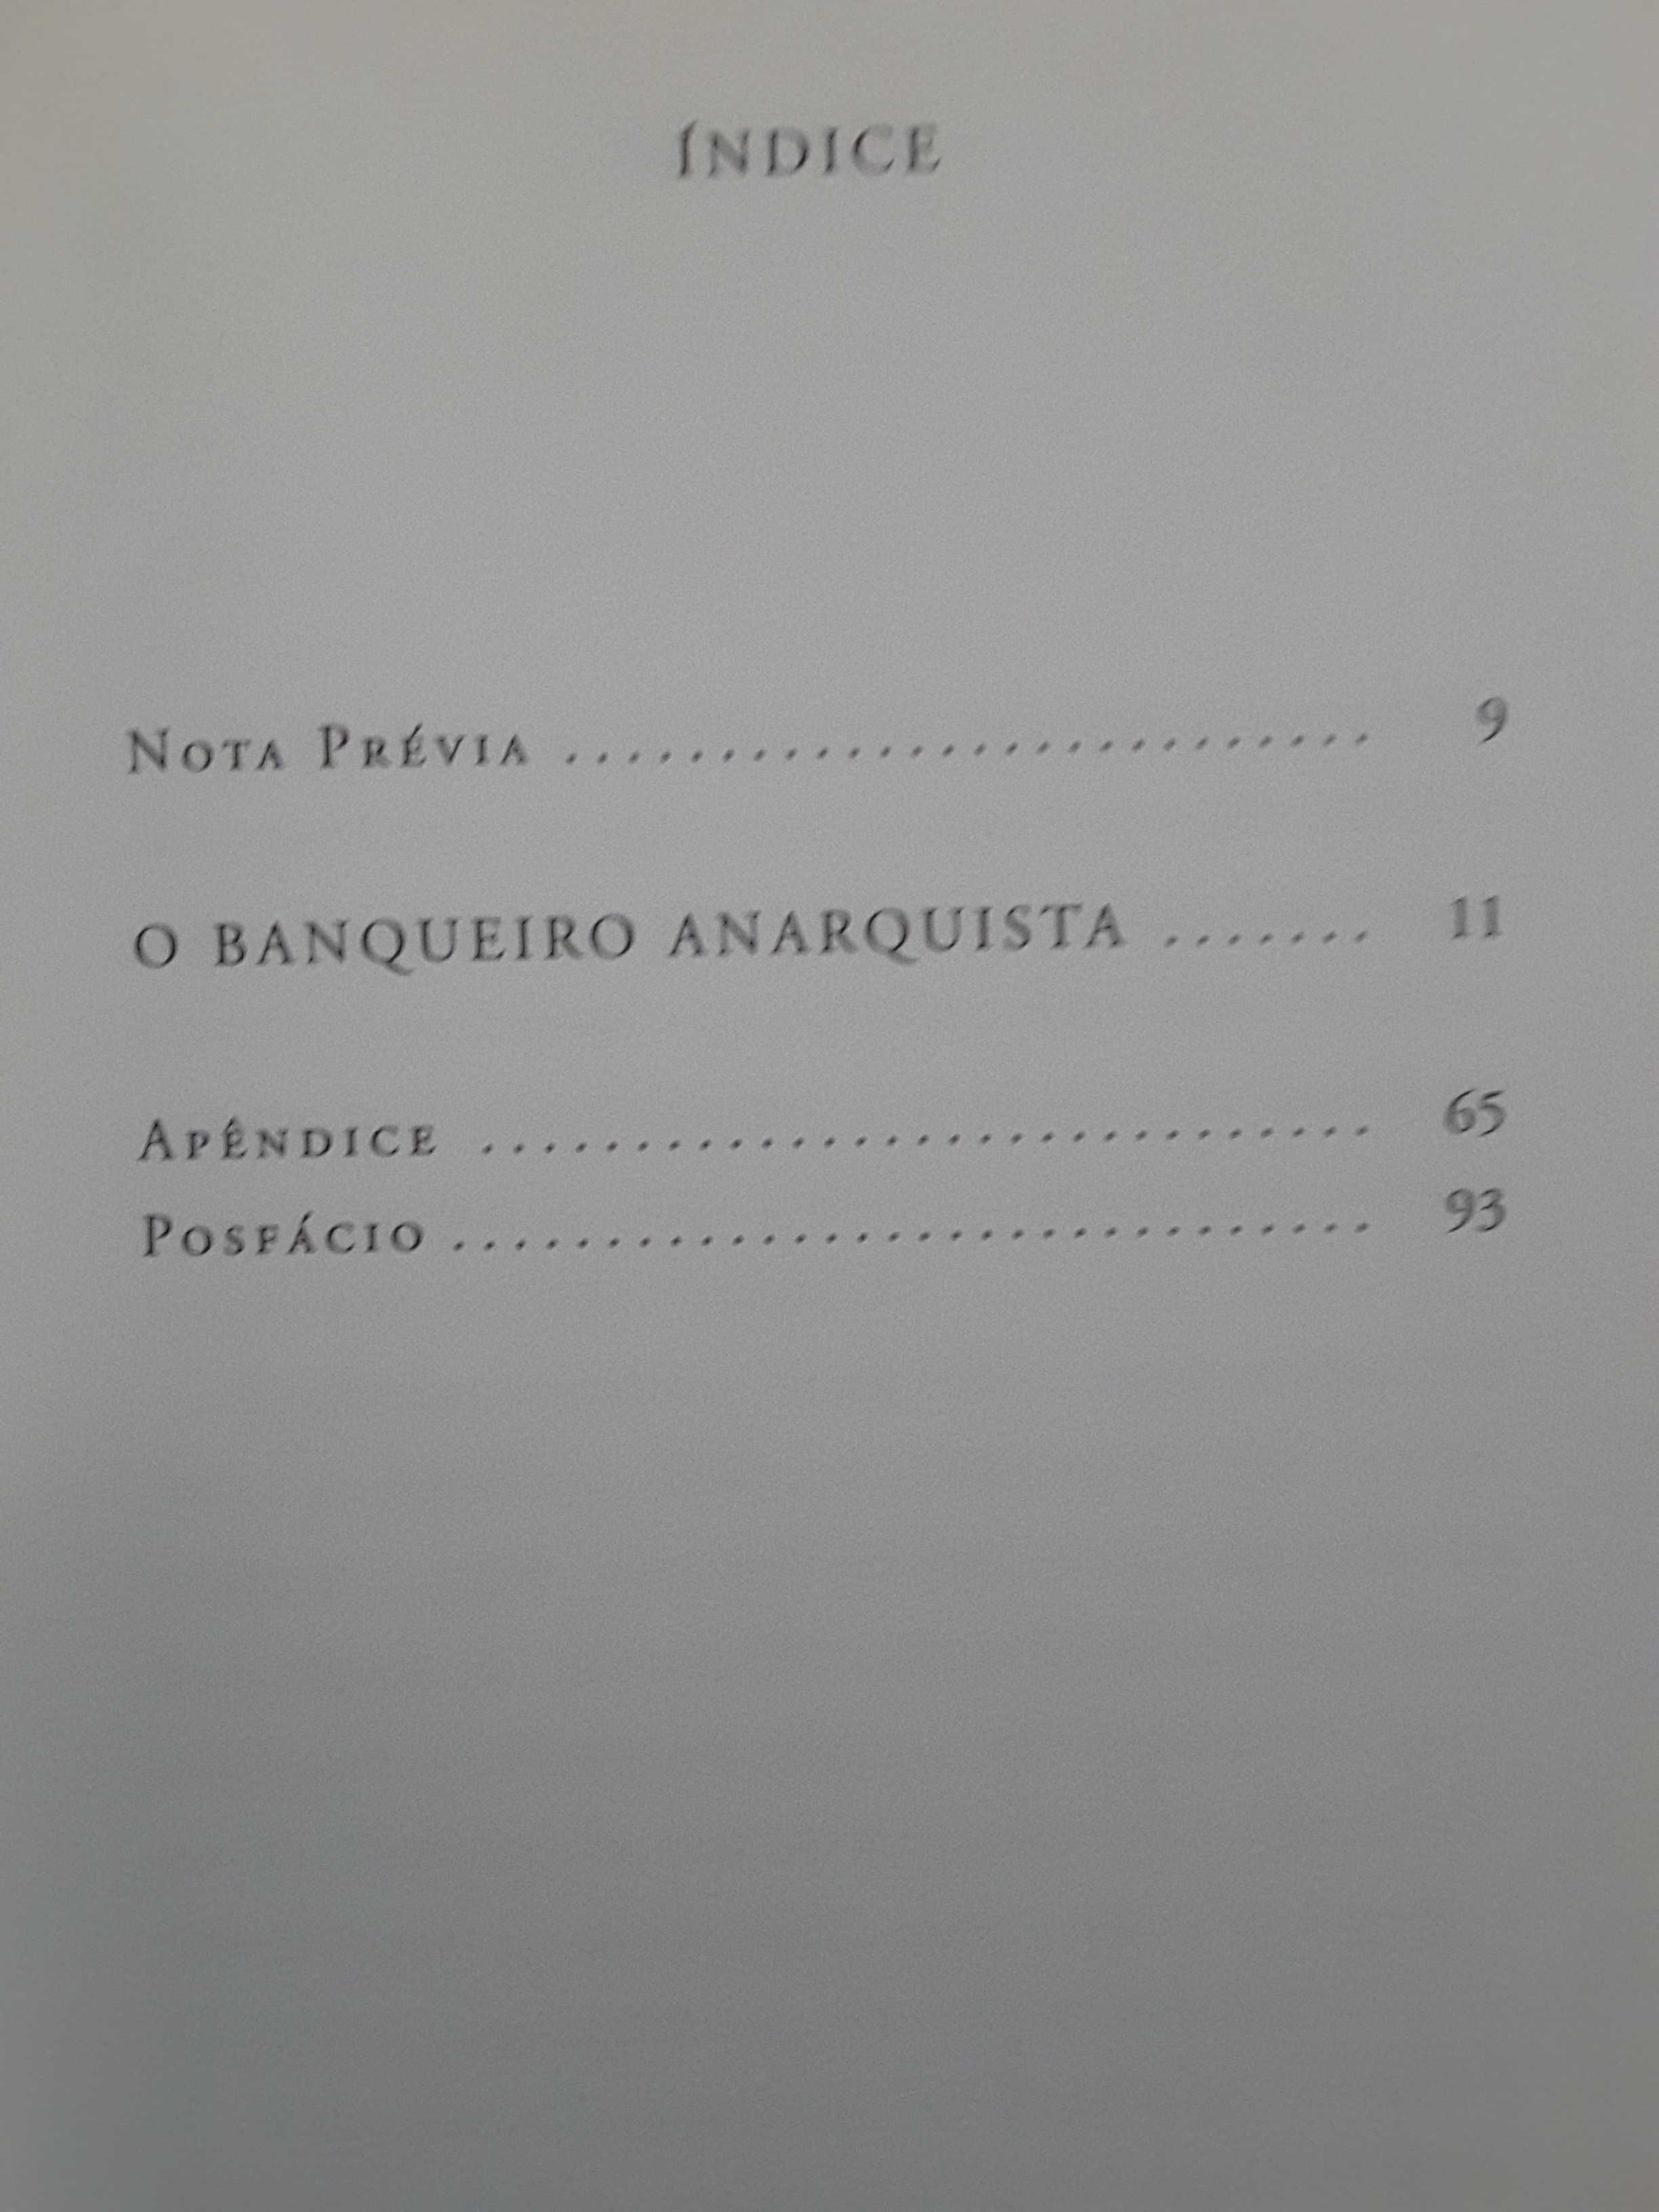 Mourão-Ferreira/Mário Cláudio/F. Pessoa/J. Pedro Marques/Sarah Affonso